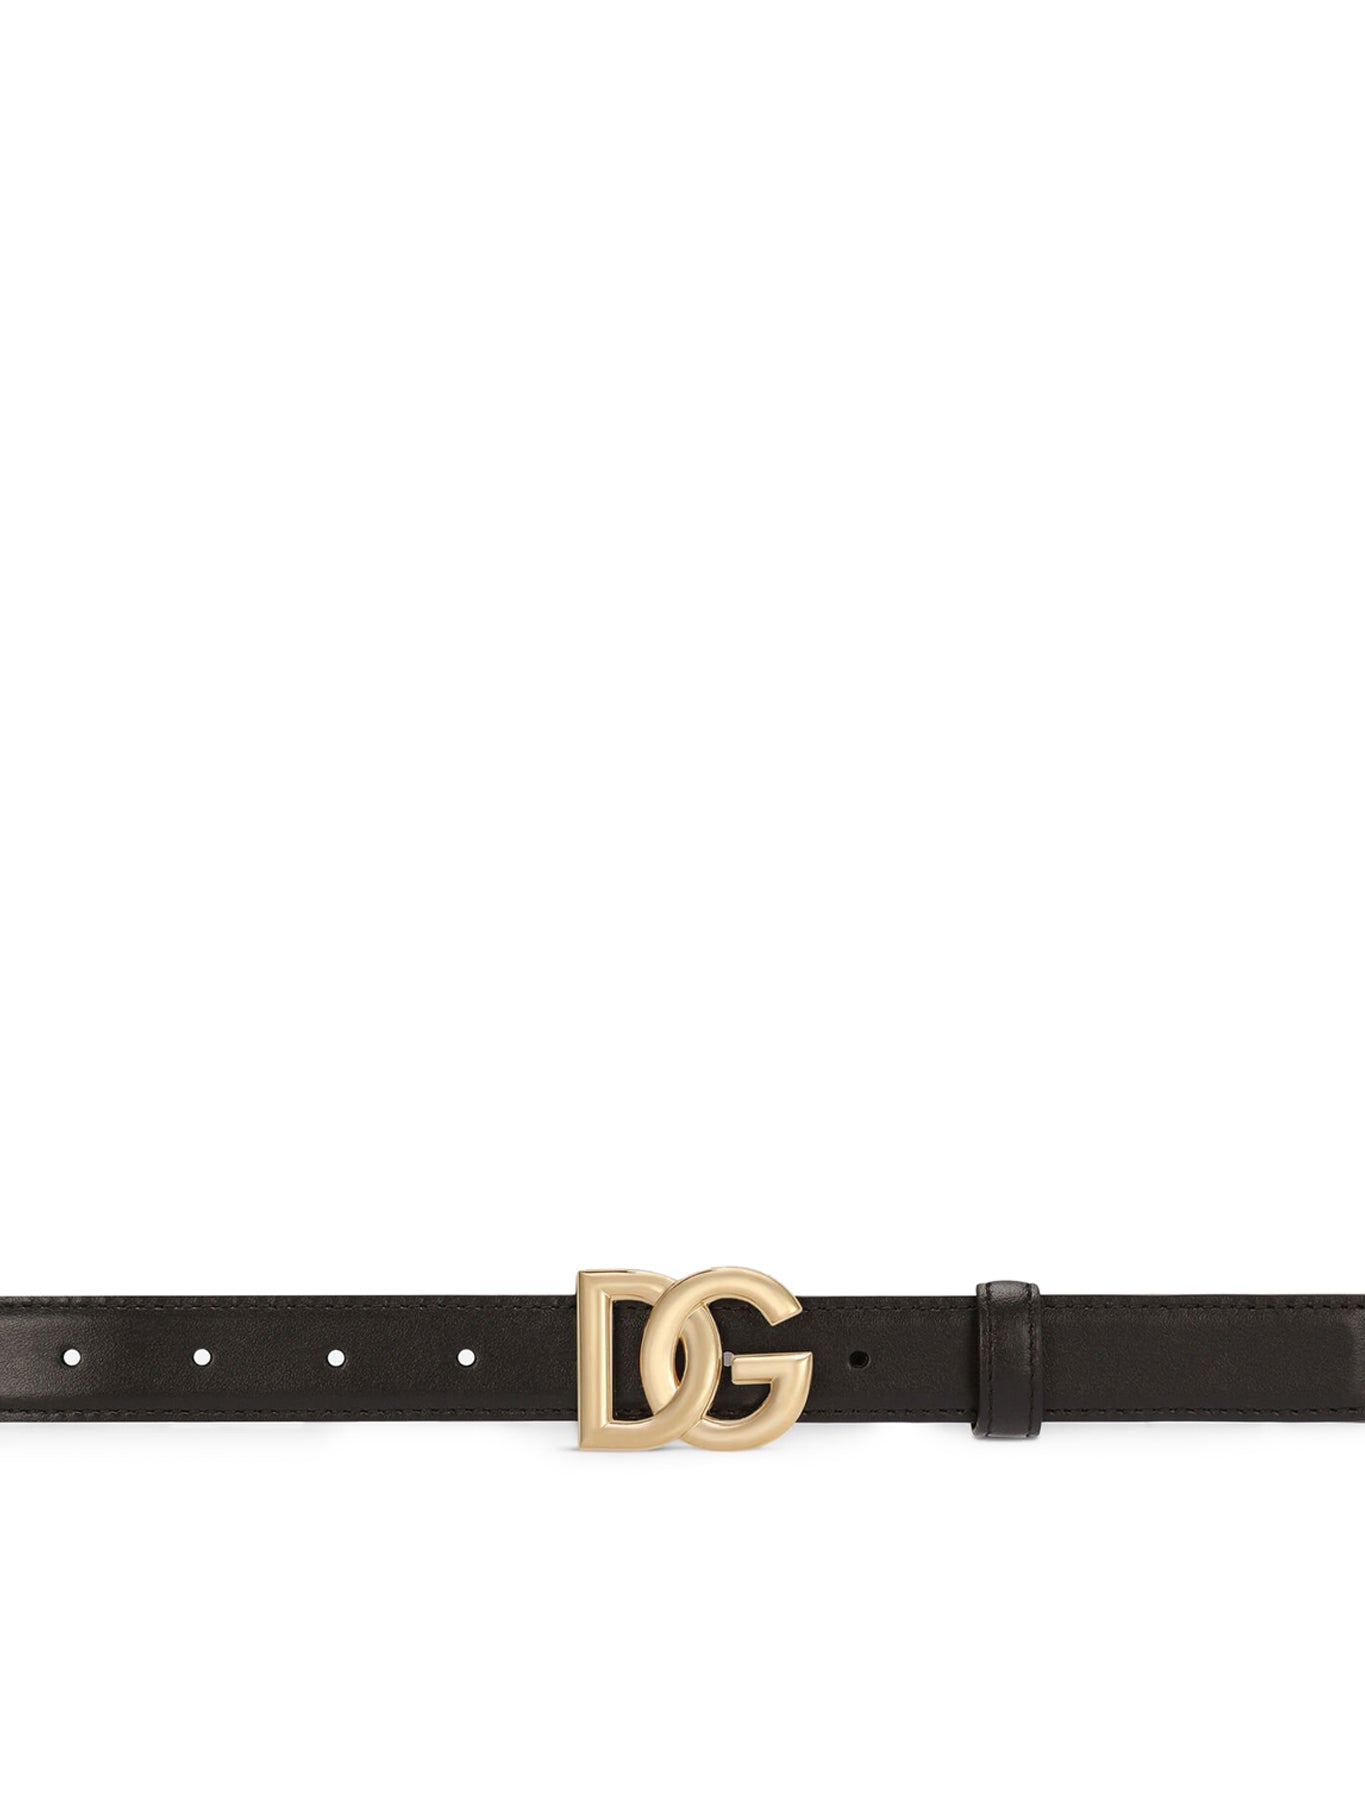 Calfskin belt with DG logo